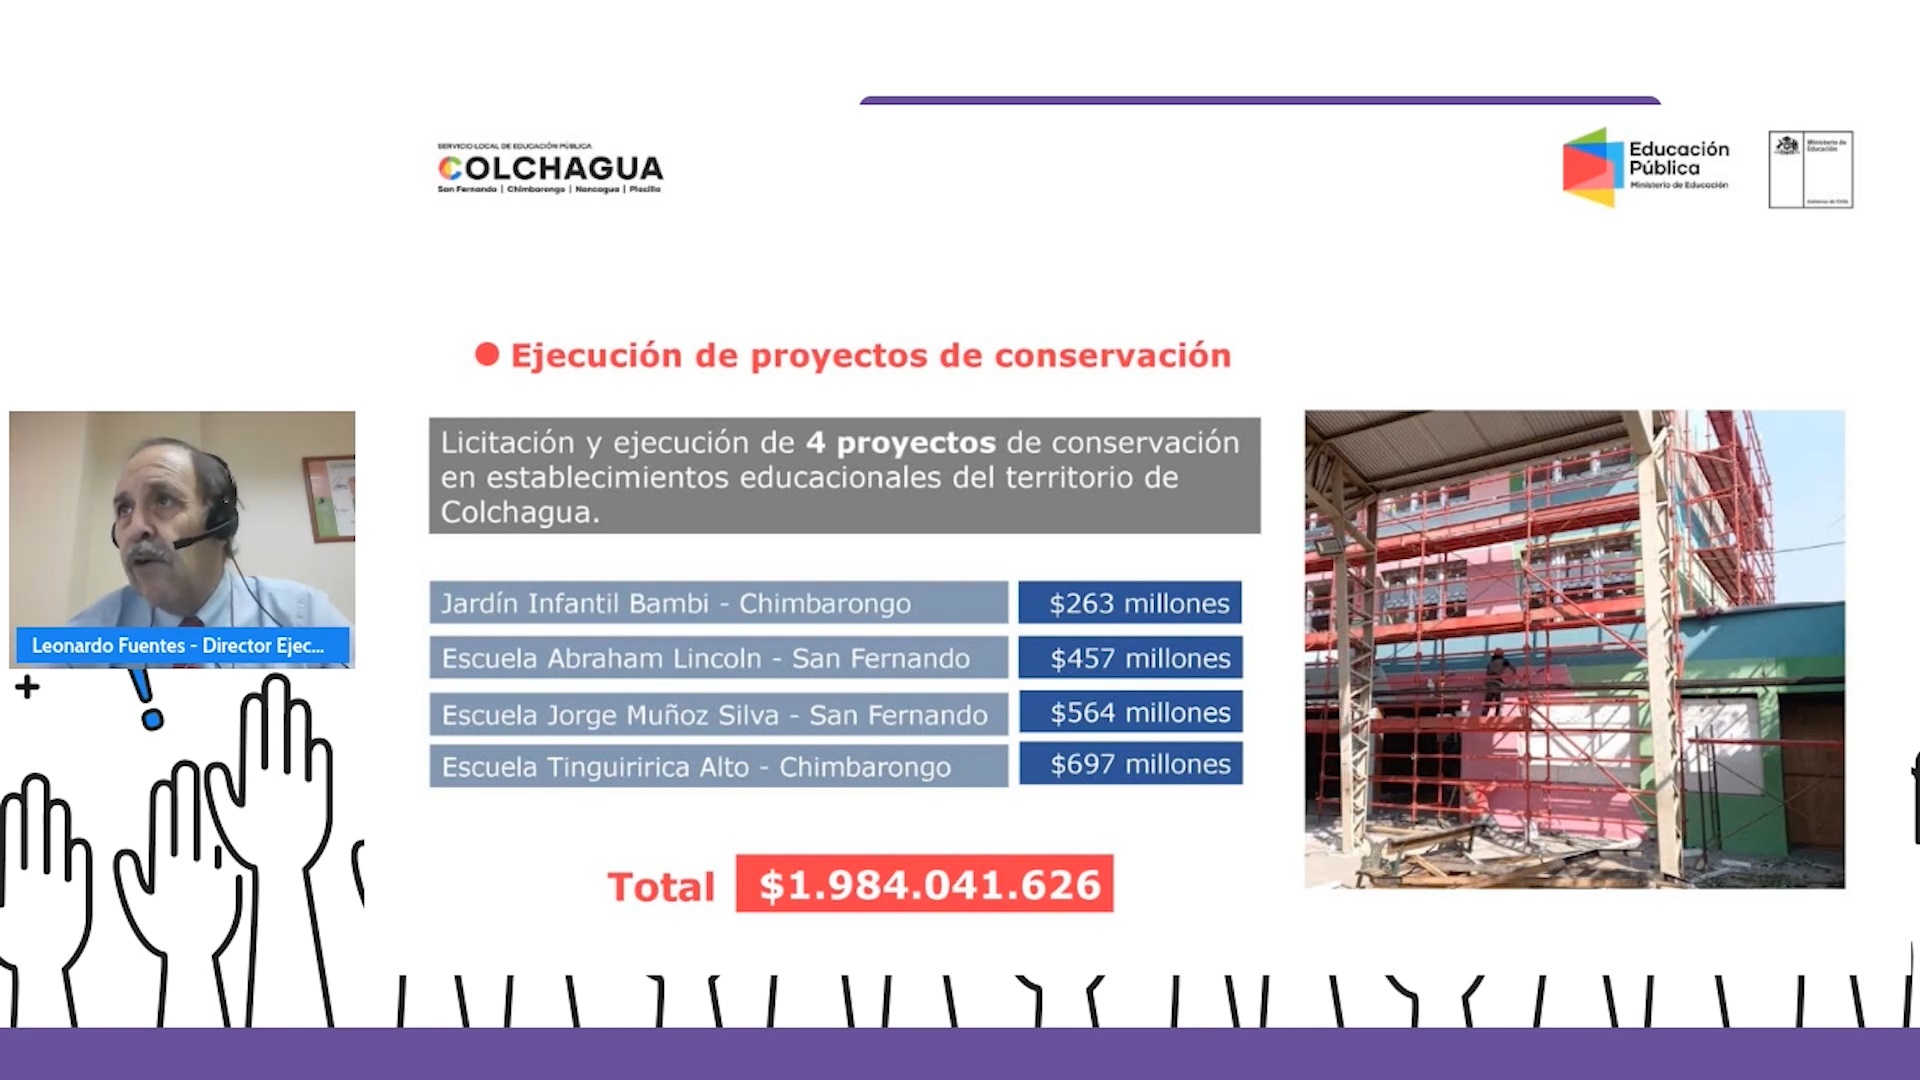 MILLONARIA INVERSIÓN EN INFRAESTRUCTURA TECNOLOGÍA Y APOYO PEDAGÓGICO PRESENTÓ SLEP COLCHAGUA EN SU CUENTA PUBLICA PARTICIPATIVA 2021 4 proyectos de conservación por 1.984 millones